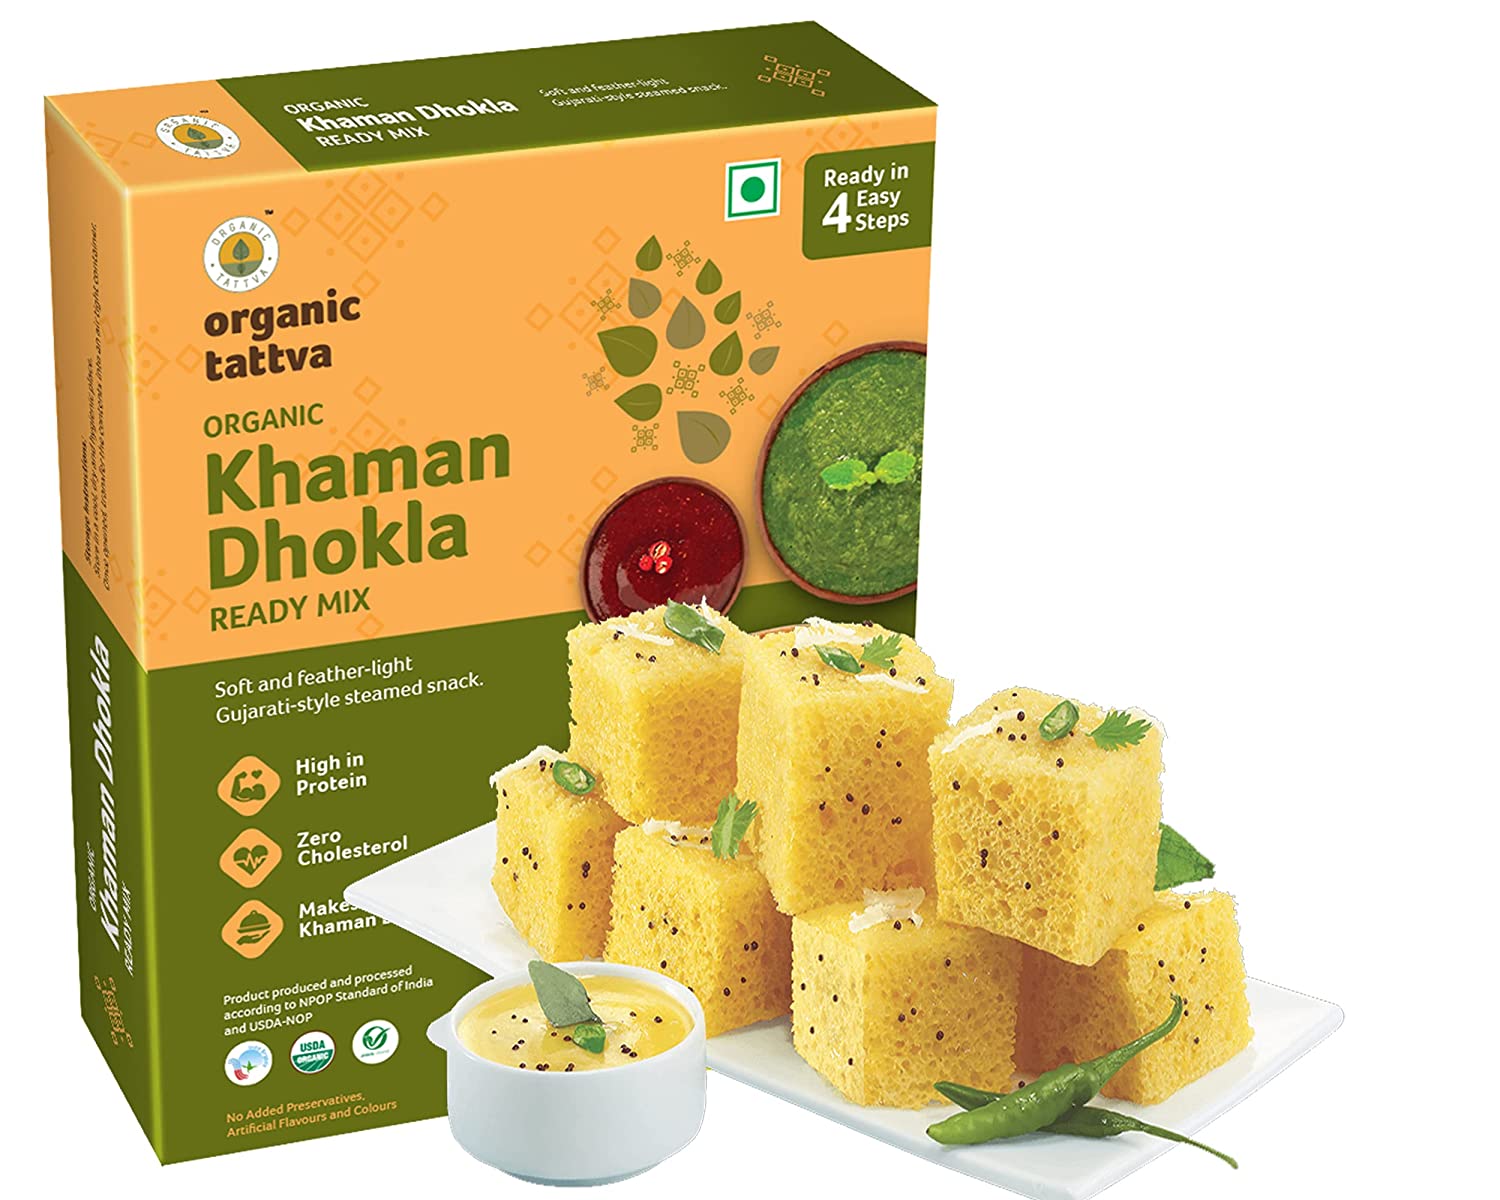 ORGANIC TATTAVA Organic Khaman Dhokla Ready Mix, 200g - Organic, Vegan